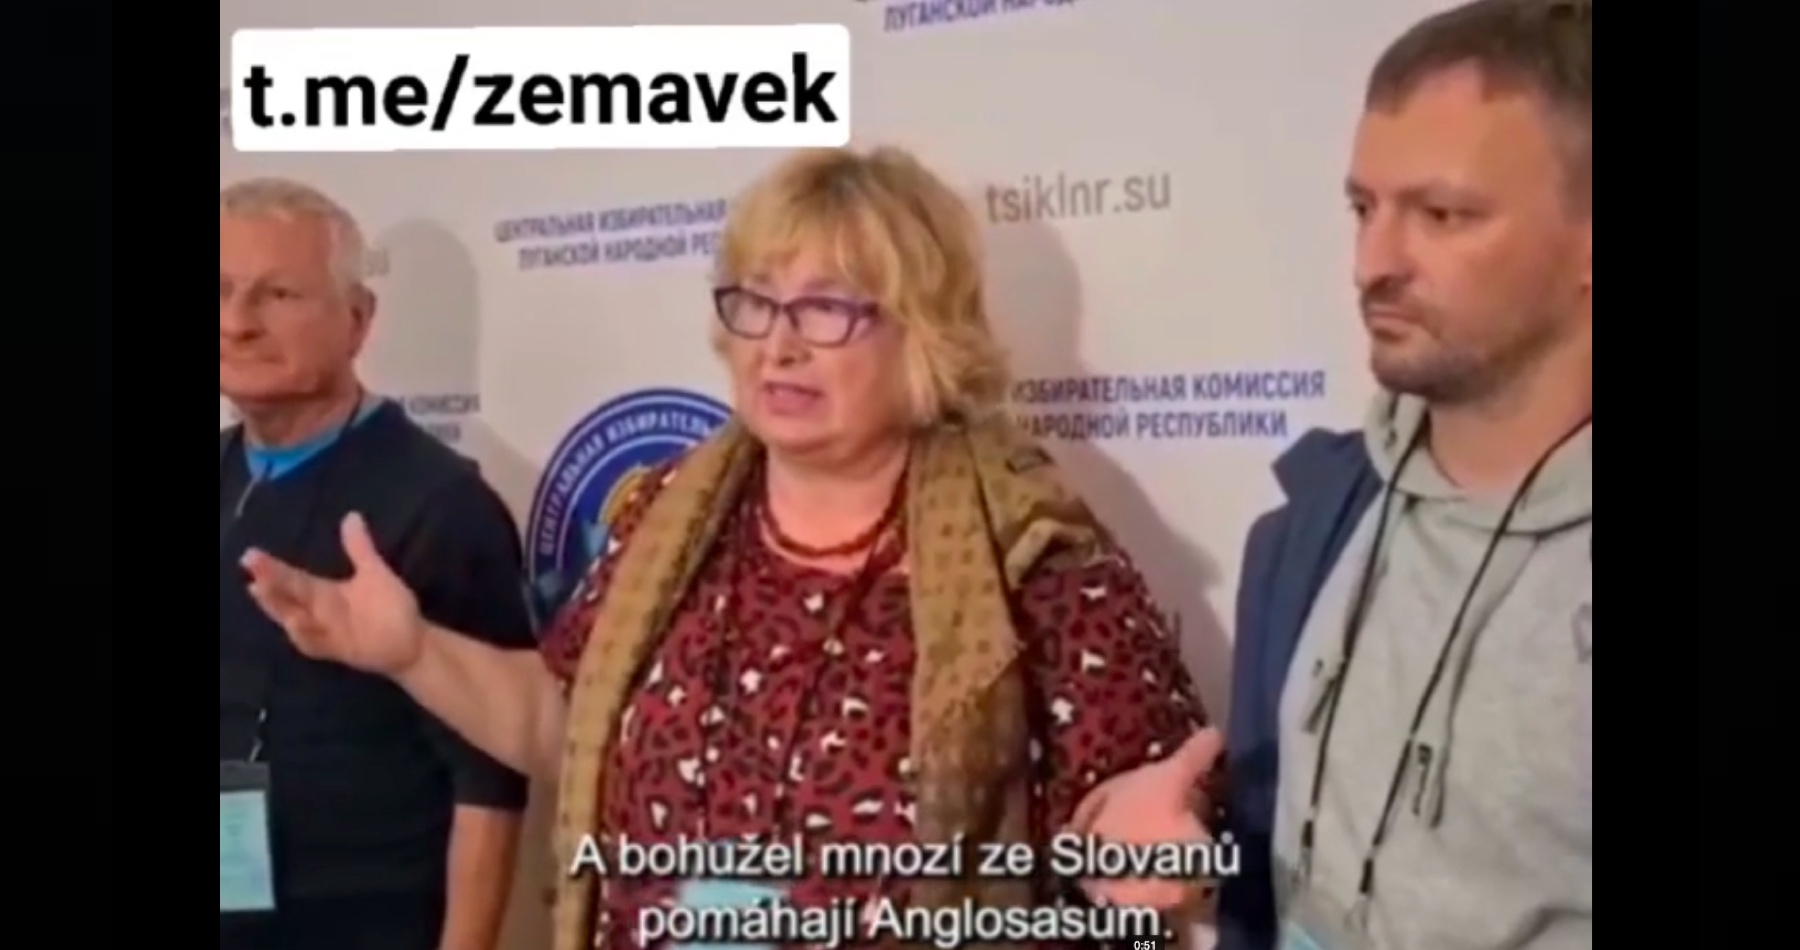 VIDEO: Slovenská pozorovateľka označila prebiehajúce referendum v Luhansku za historickú udalosť, ktorá je dobrým príkladom pre Slovanov, že majú držať spolu